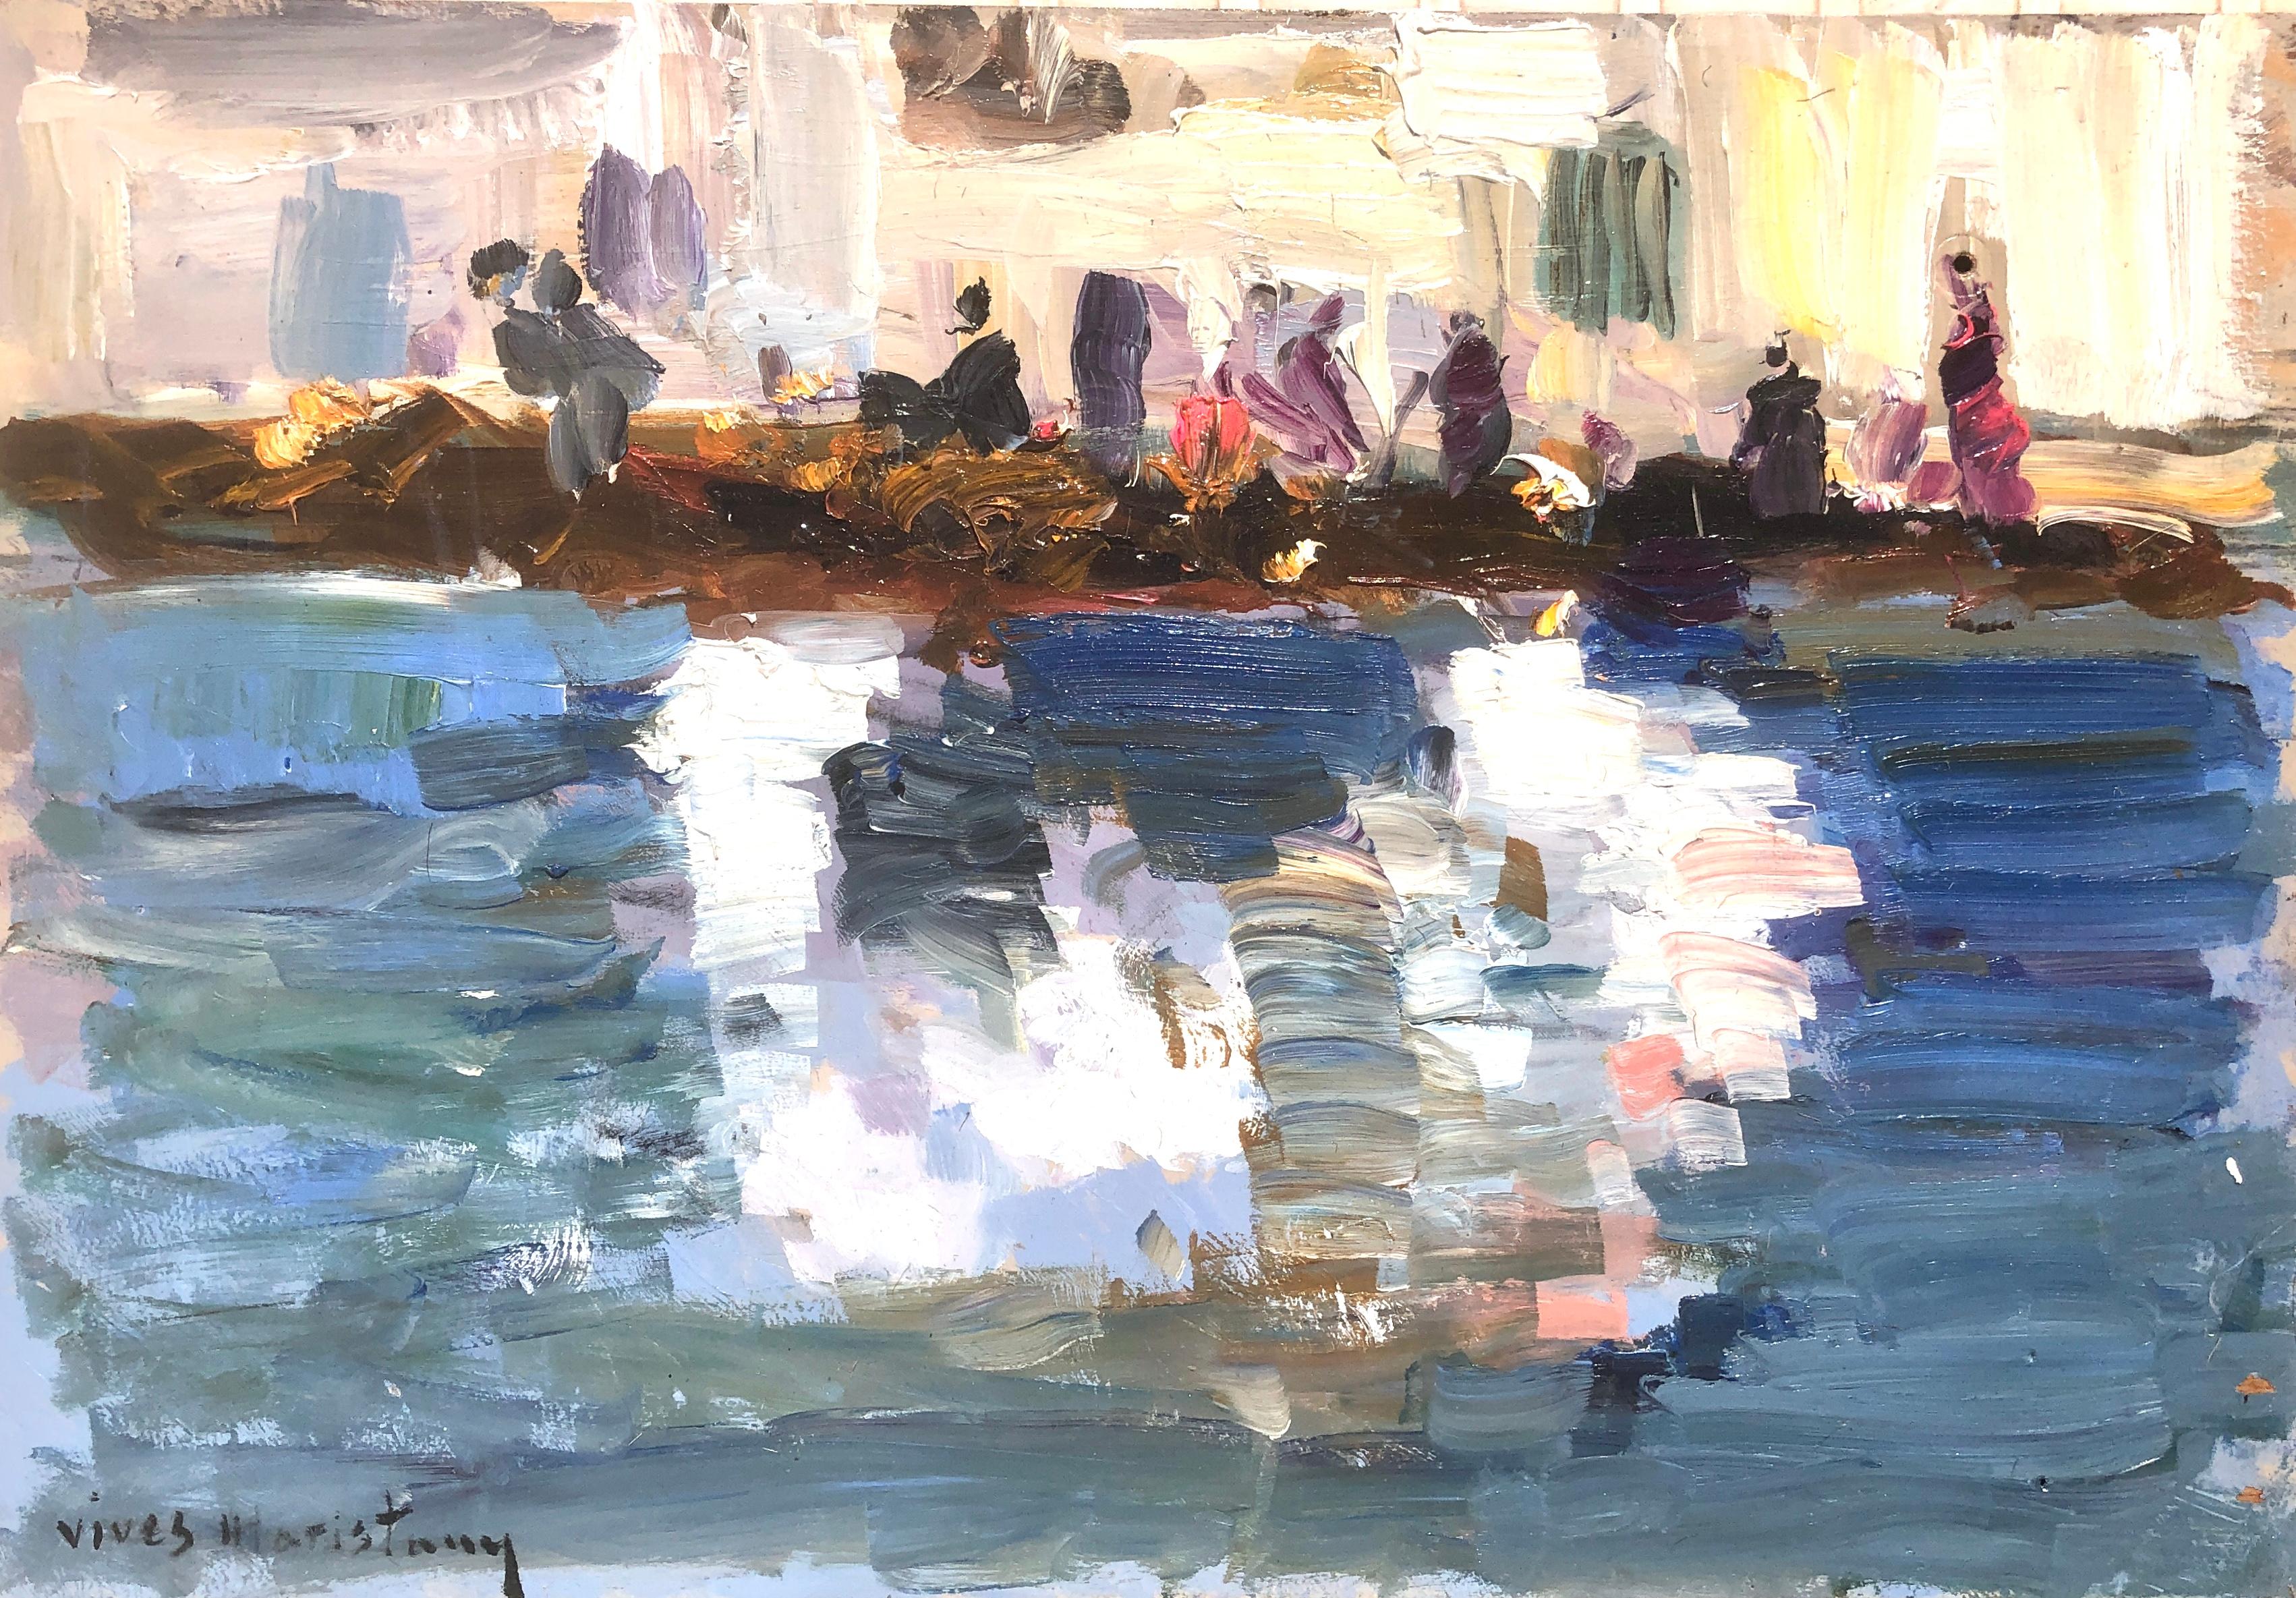 Landscape Painting Joan Vives Maristany - Peinture à l'huile sur toile impressionniste de Cadaques - Paysage marin espagnol